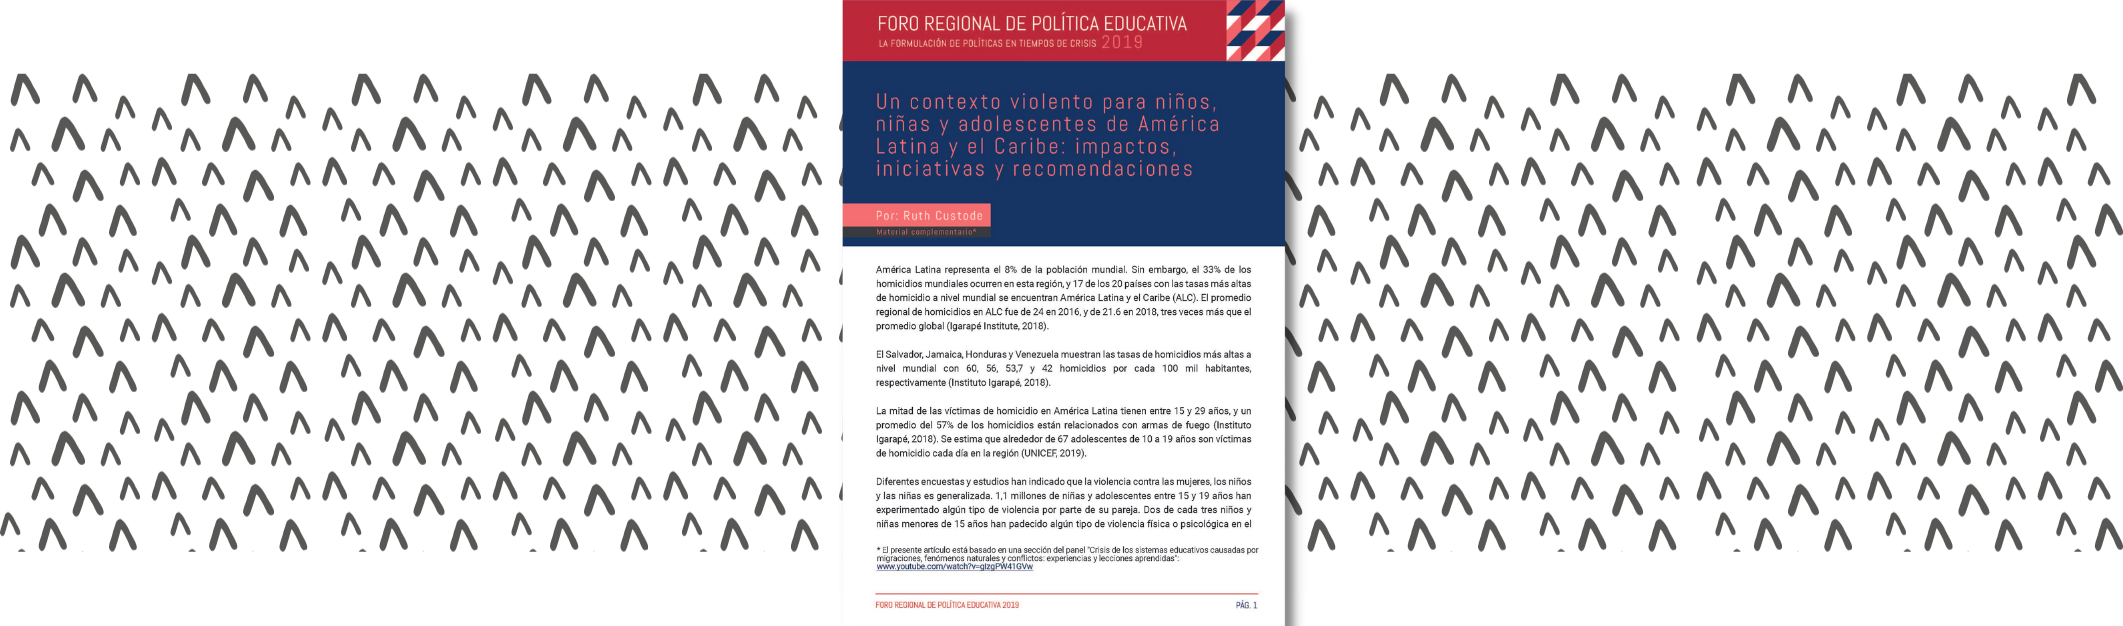 Un contexto violento para niños, niñas y adolescentes de América Latina y el Caribe: impactos, iniciativas y recomendaciones